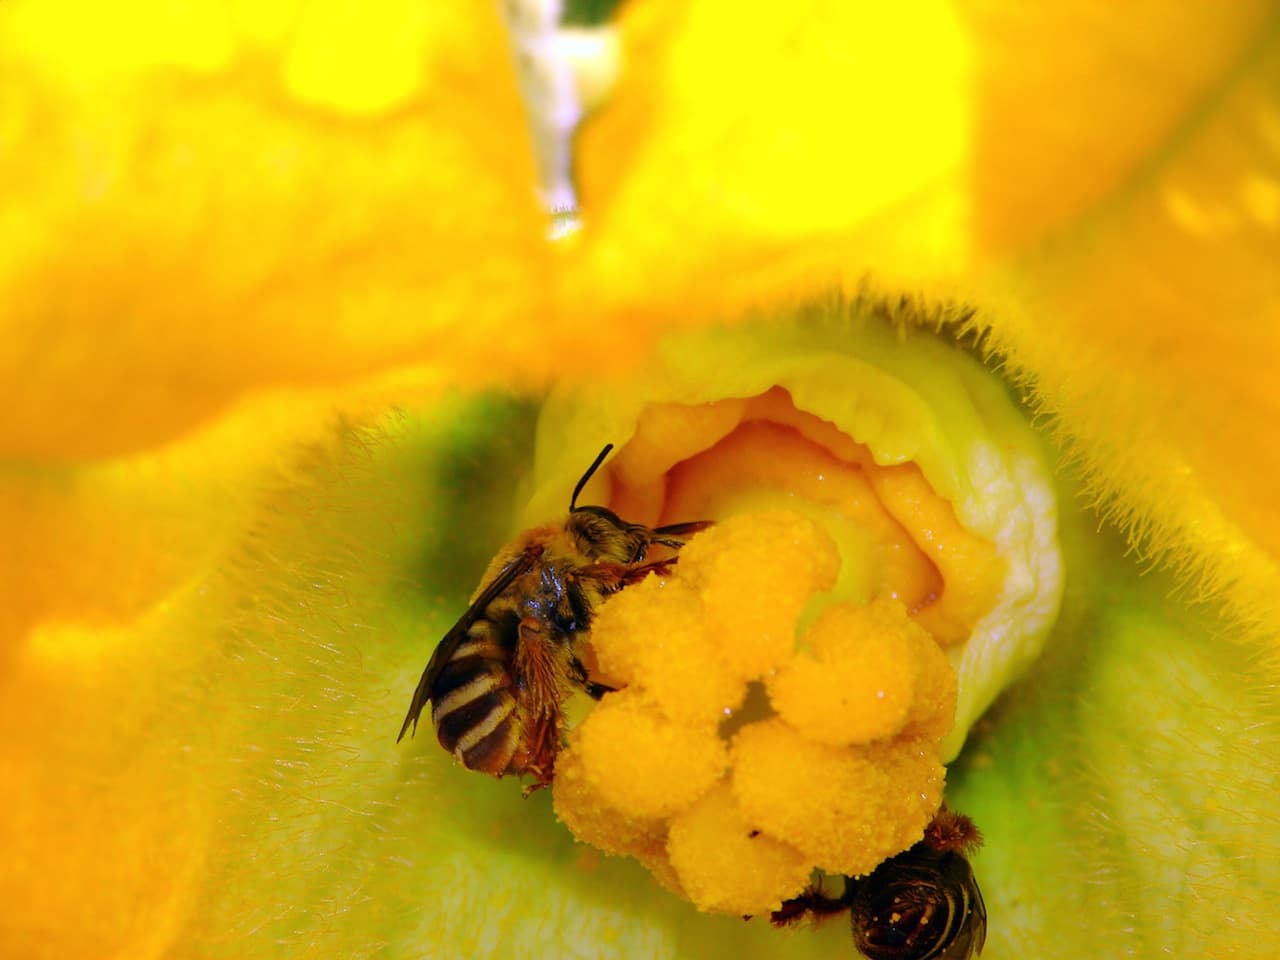 Nagy bajban lesz az emberiség, ha nem mentjük meg a méheket